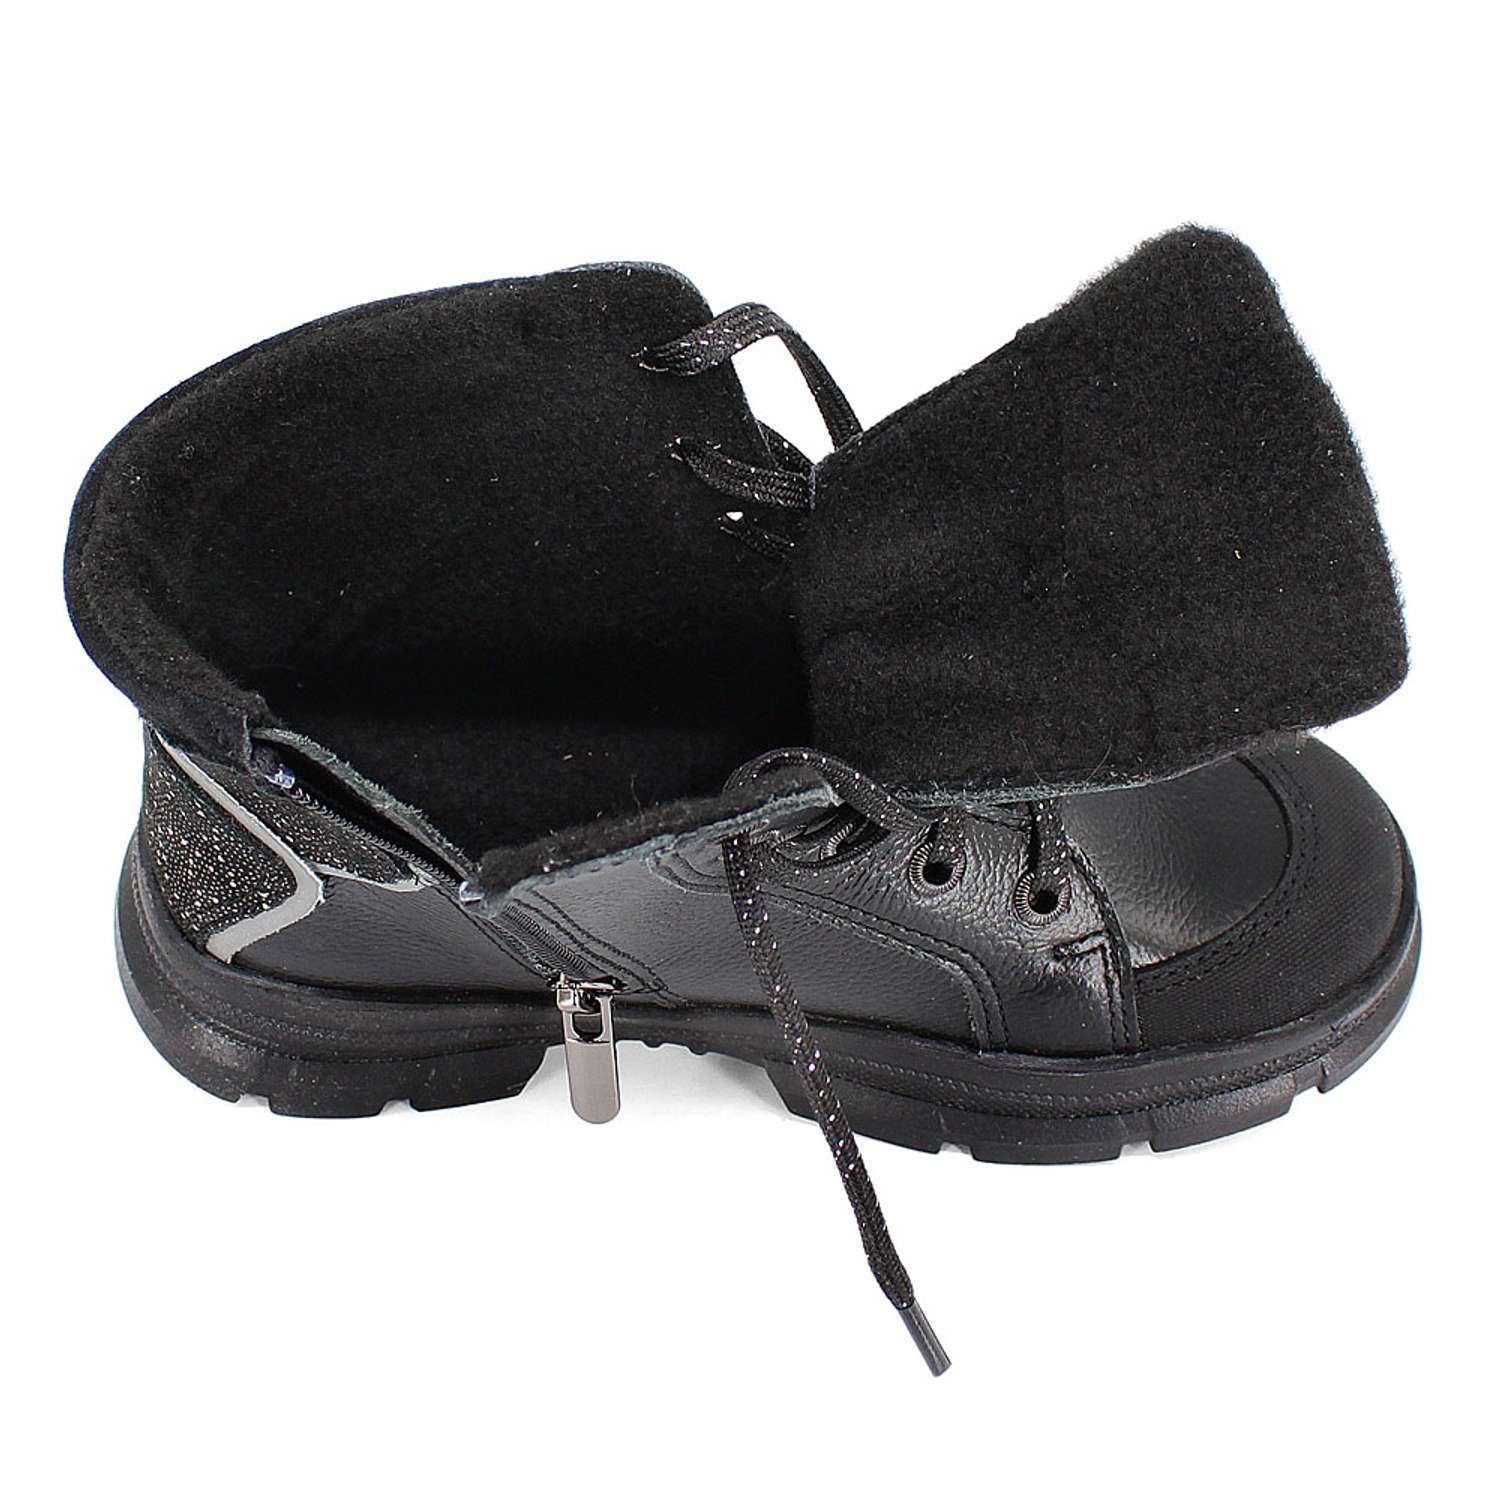 Ботинки ЛЕЛЬ м 3-1949 Ботинки дошкольные байка (черный) - фото 4